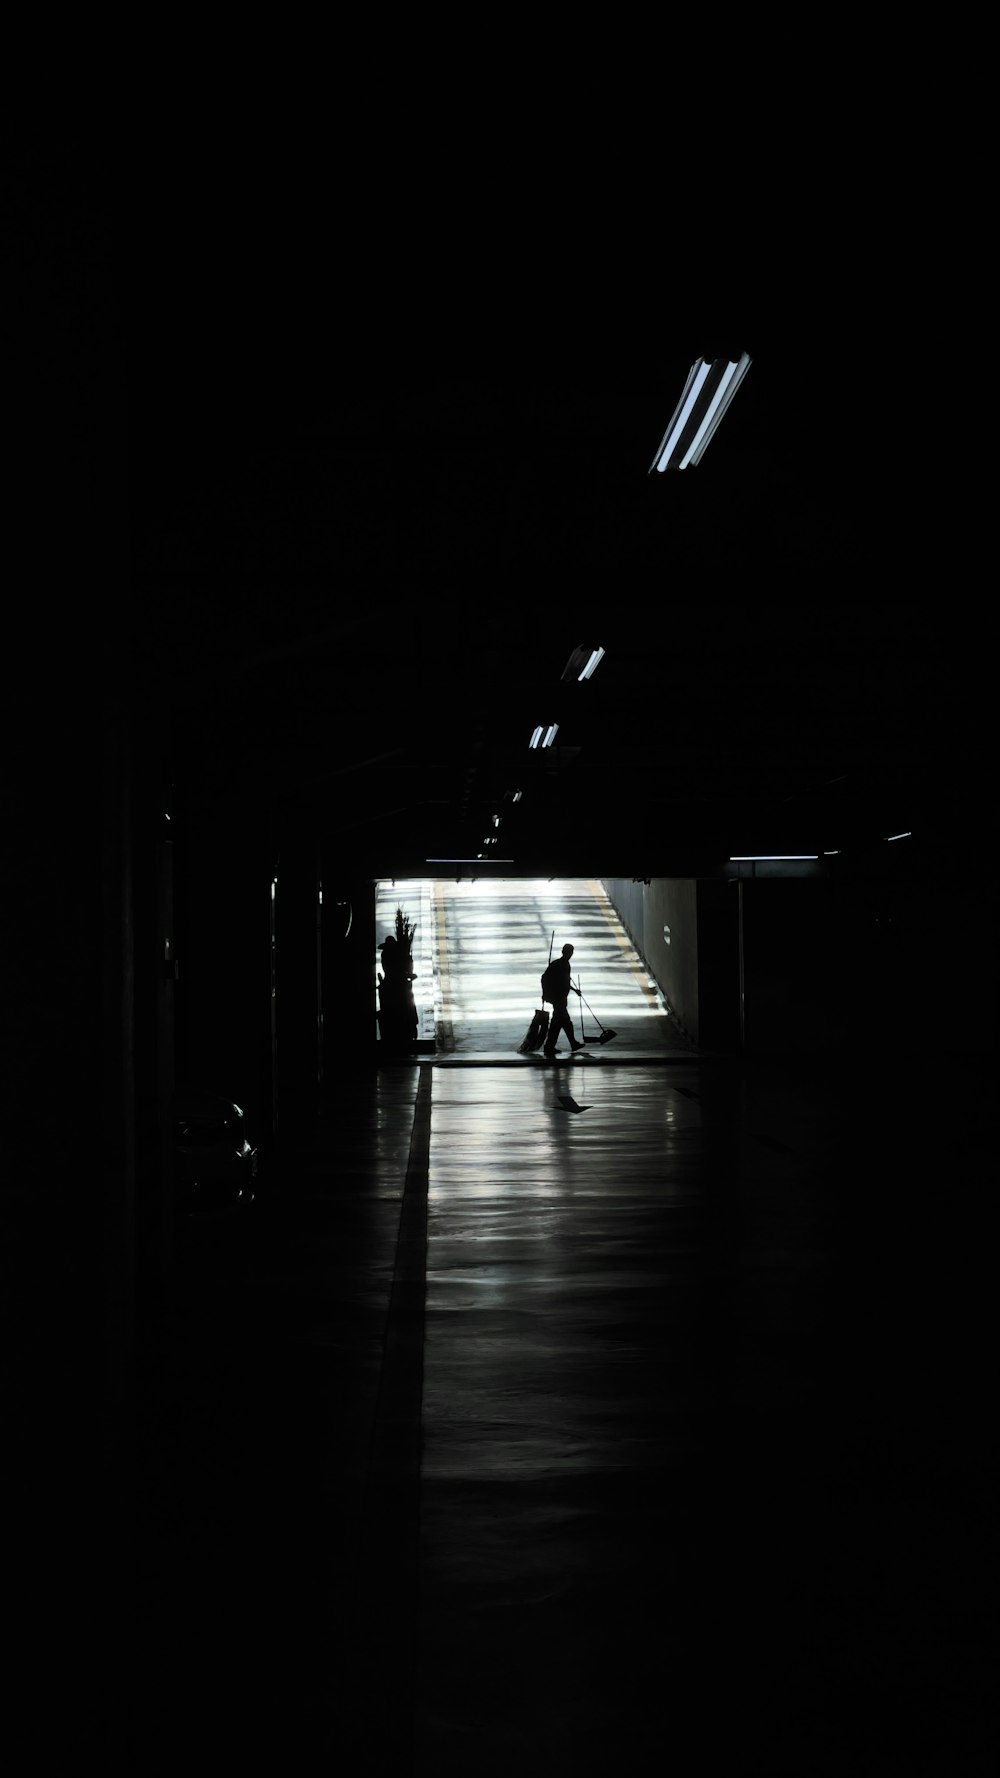 a person riding a motorcycle through a dark tunnel